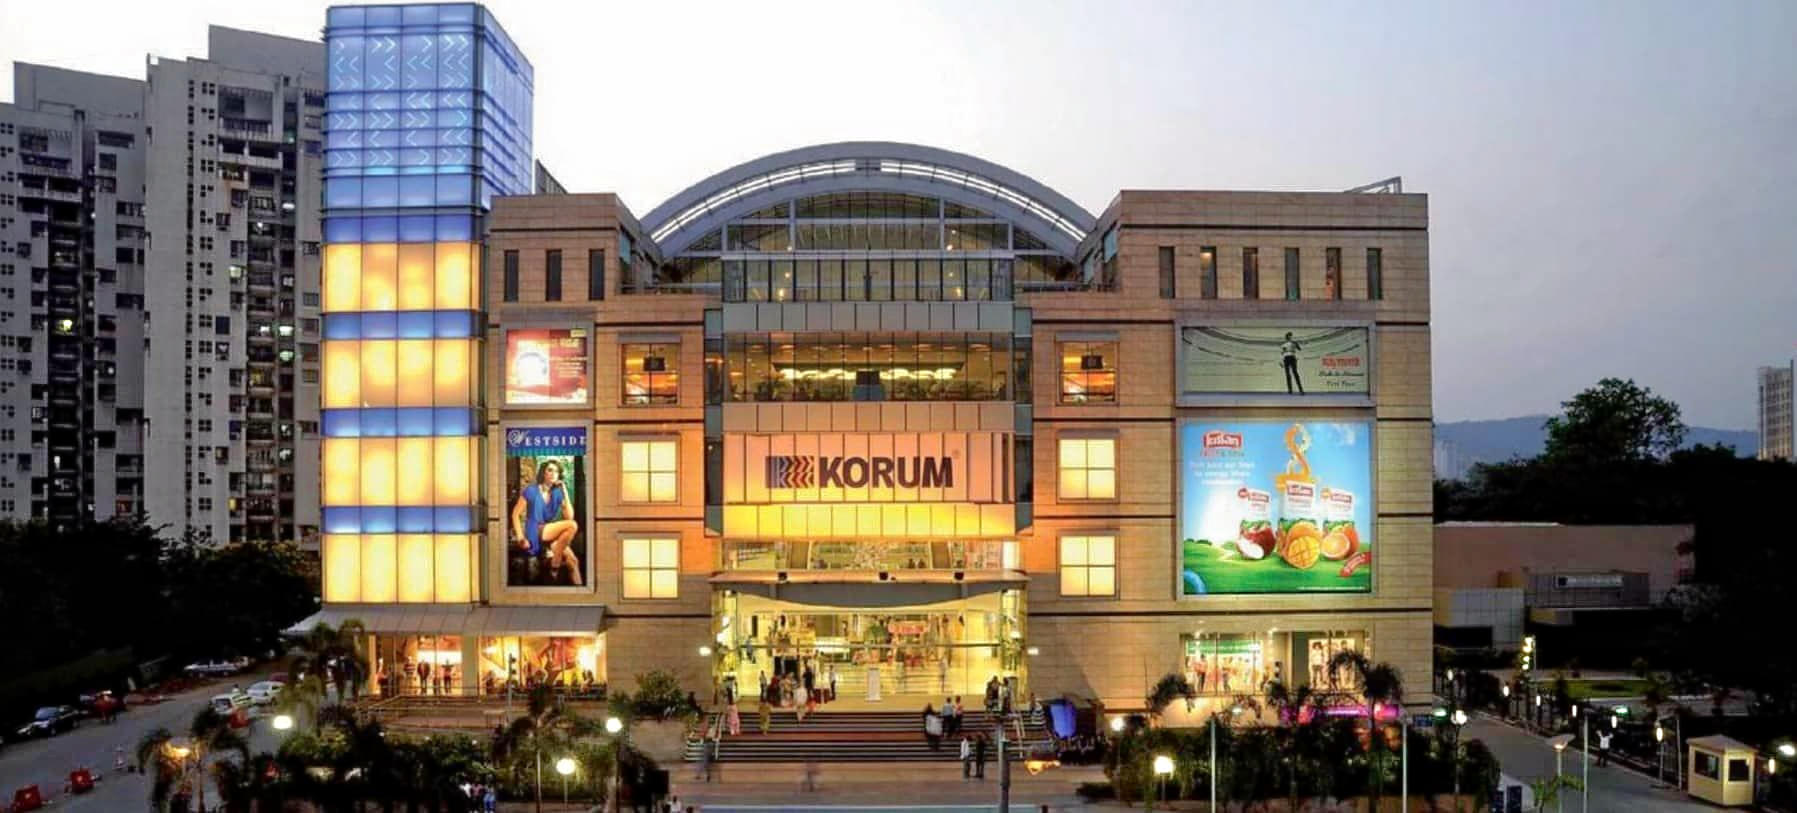 Korum Mall Overview